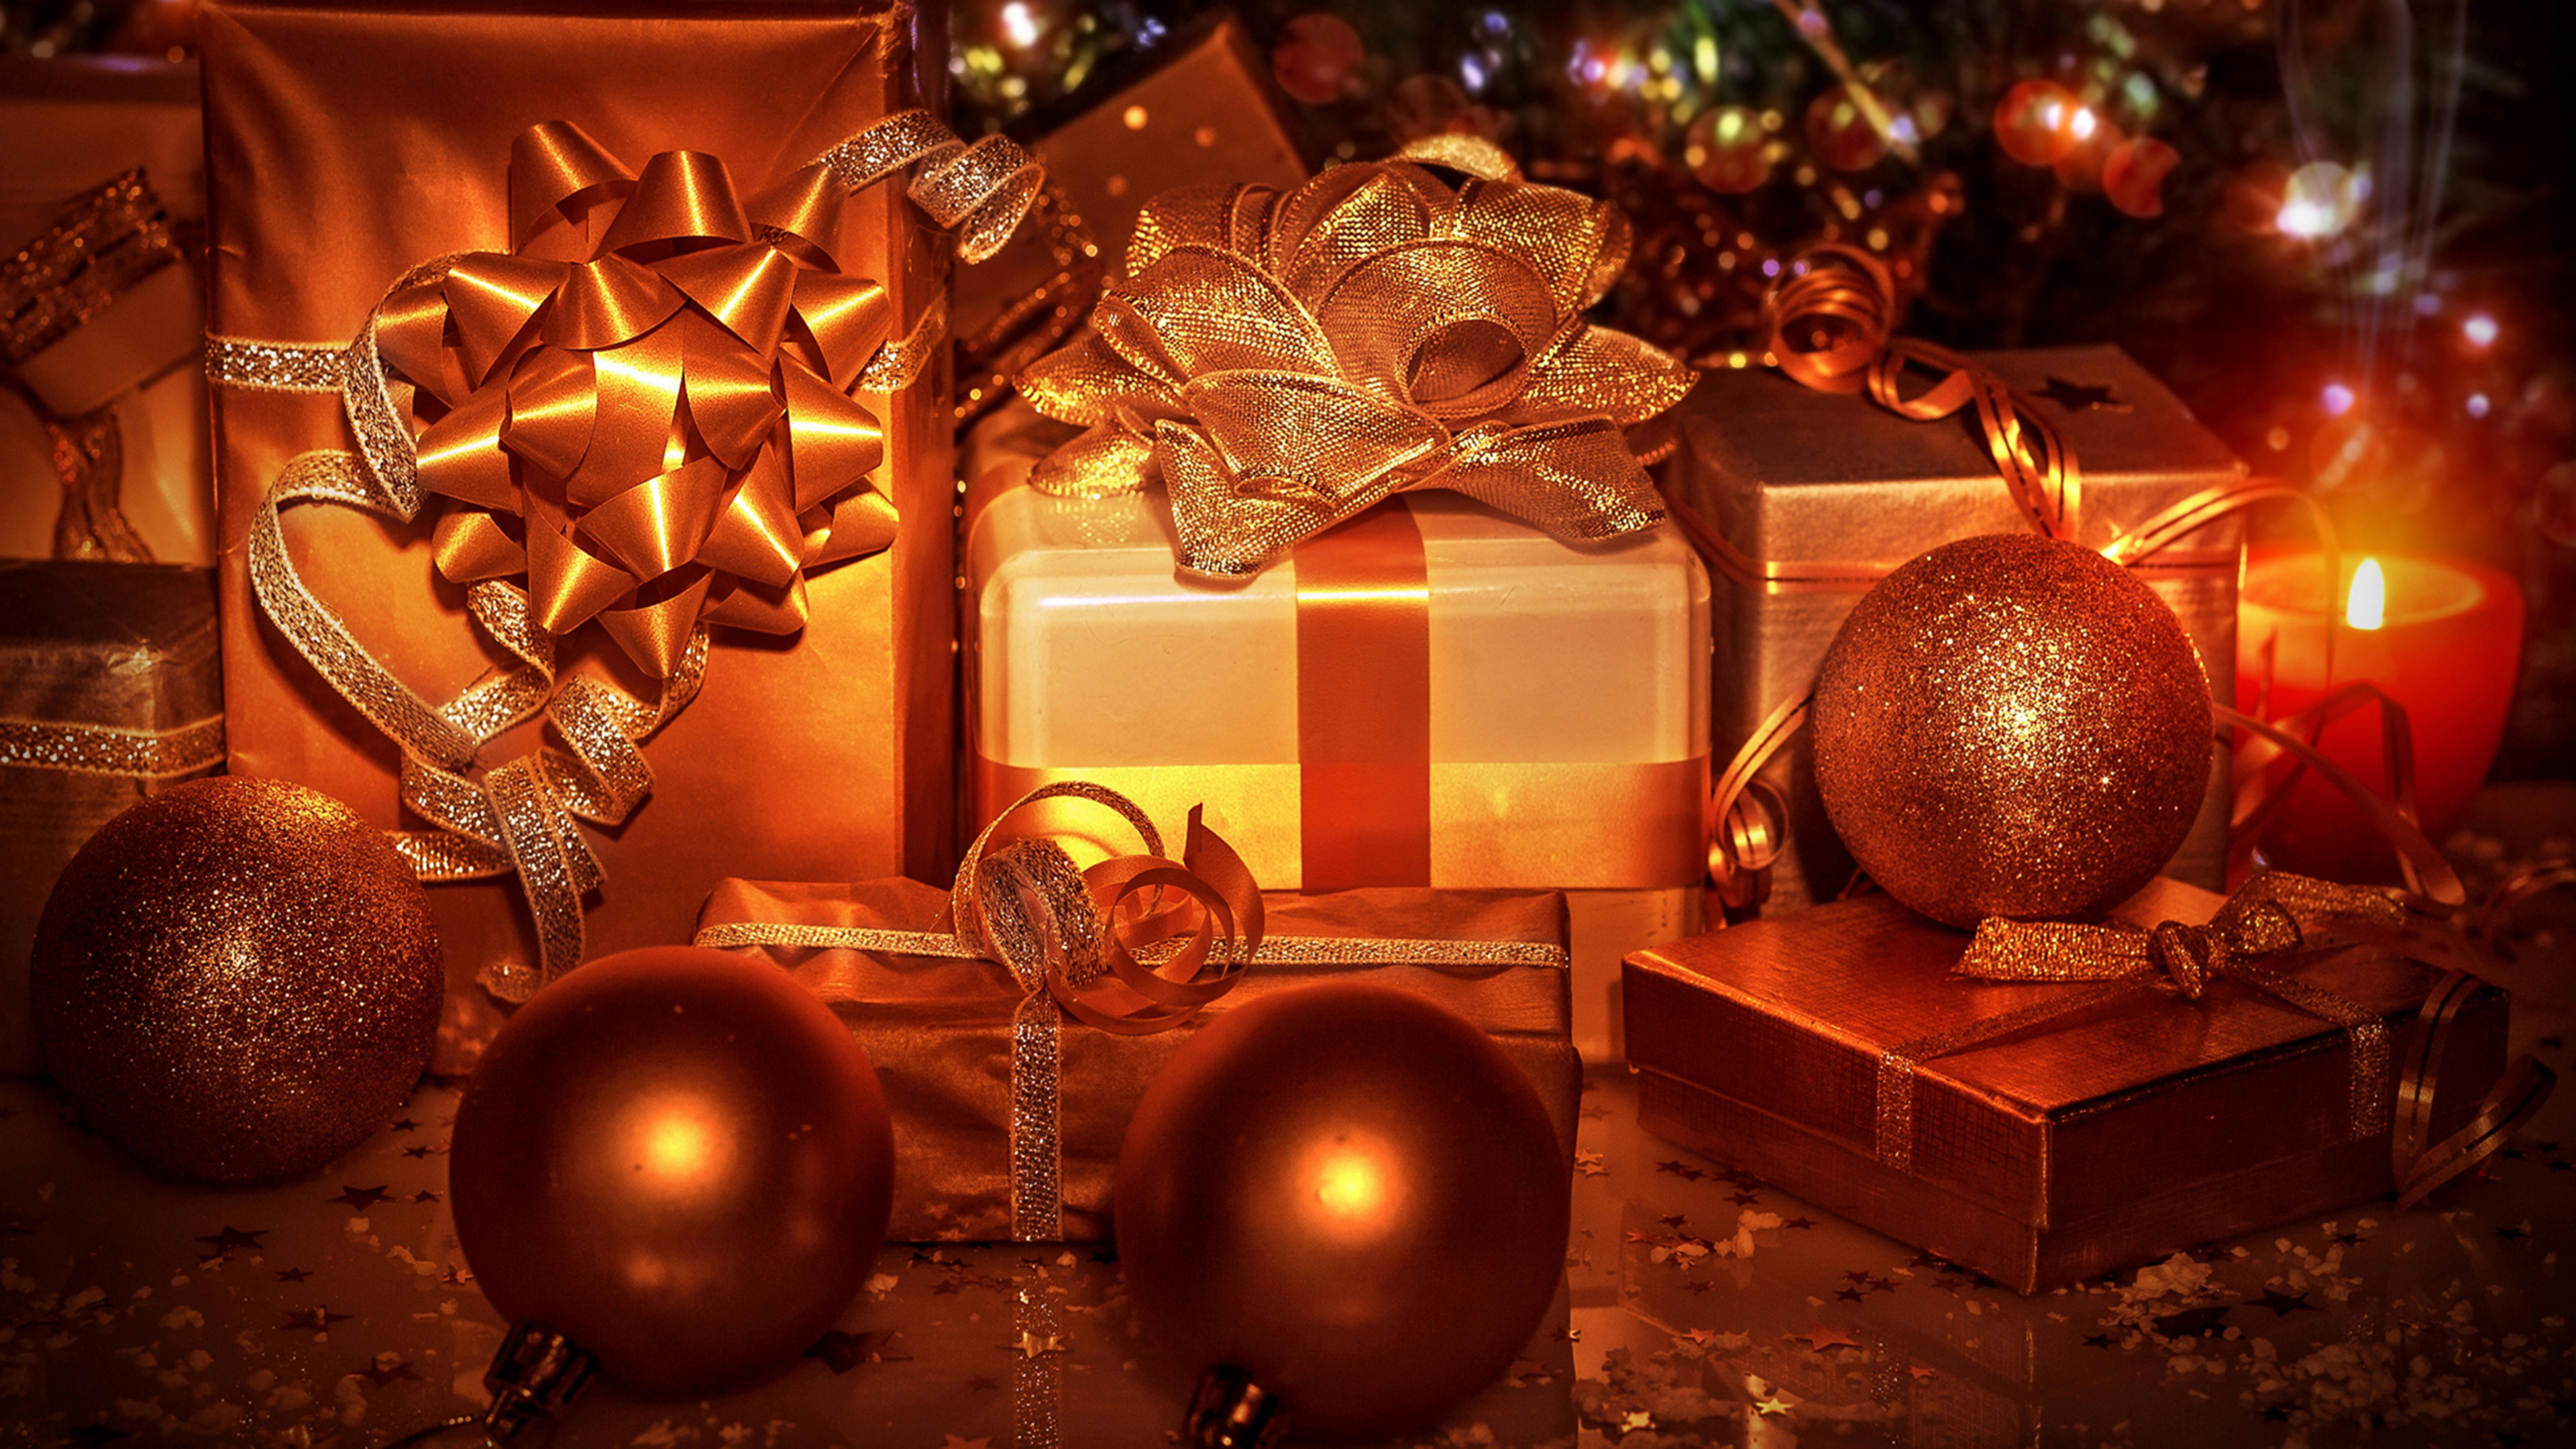 圣诞节那天, 圣诞节的装饰品, 圣诞树, 圣诞节礼物, 假日 壁纸 3840x2160 允许